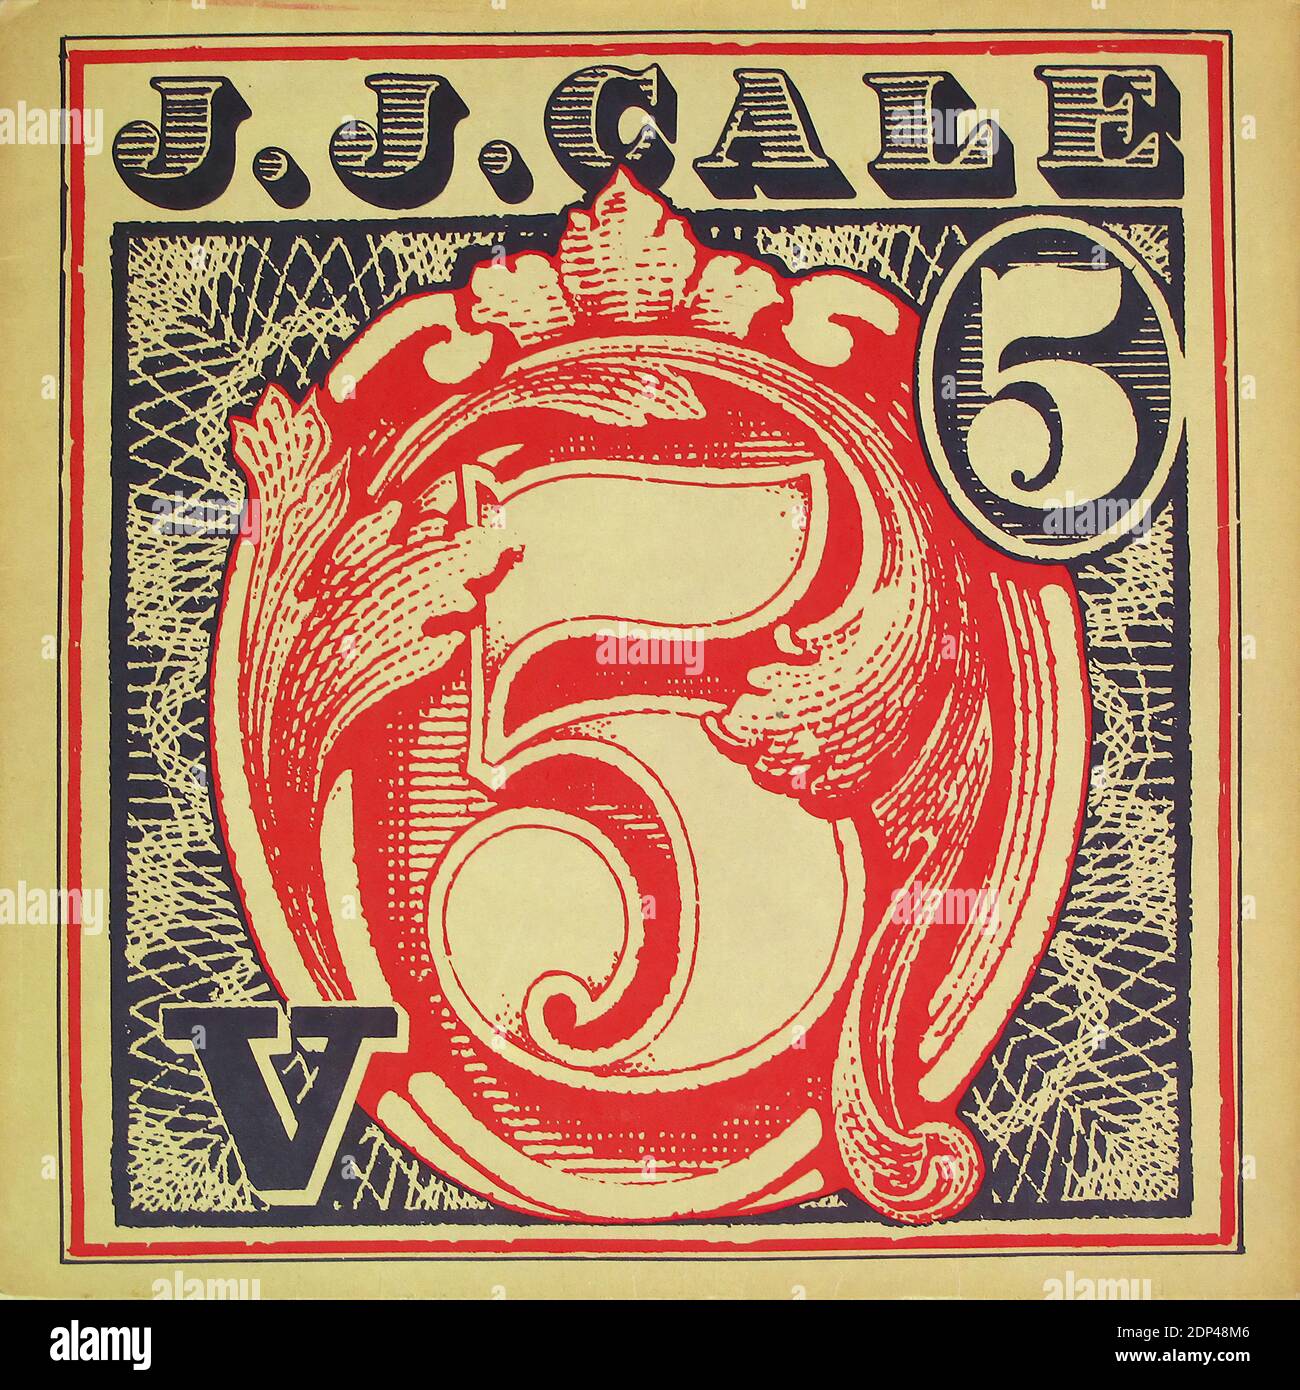 J.J. CALE   5 V  - Vintage Vinyl Record Cover Stock Photo